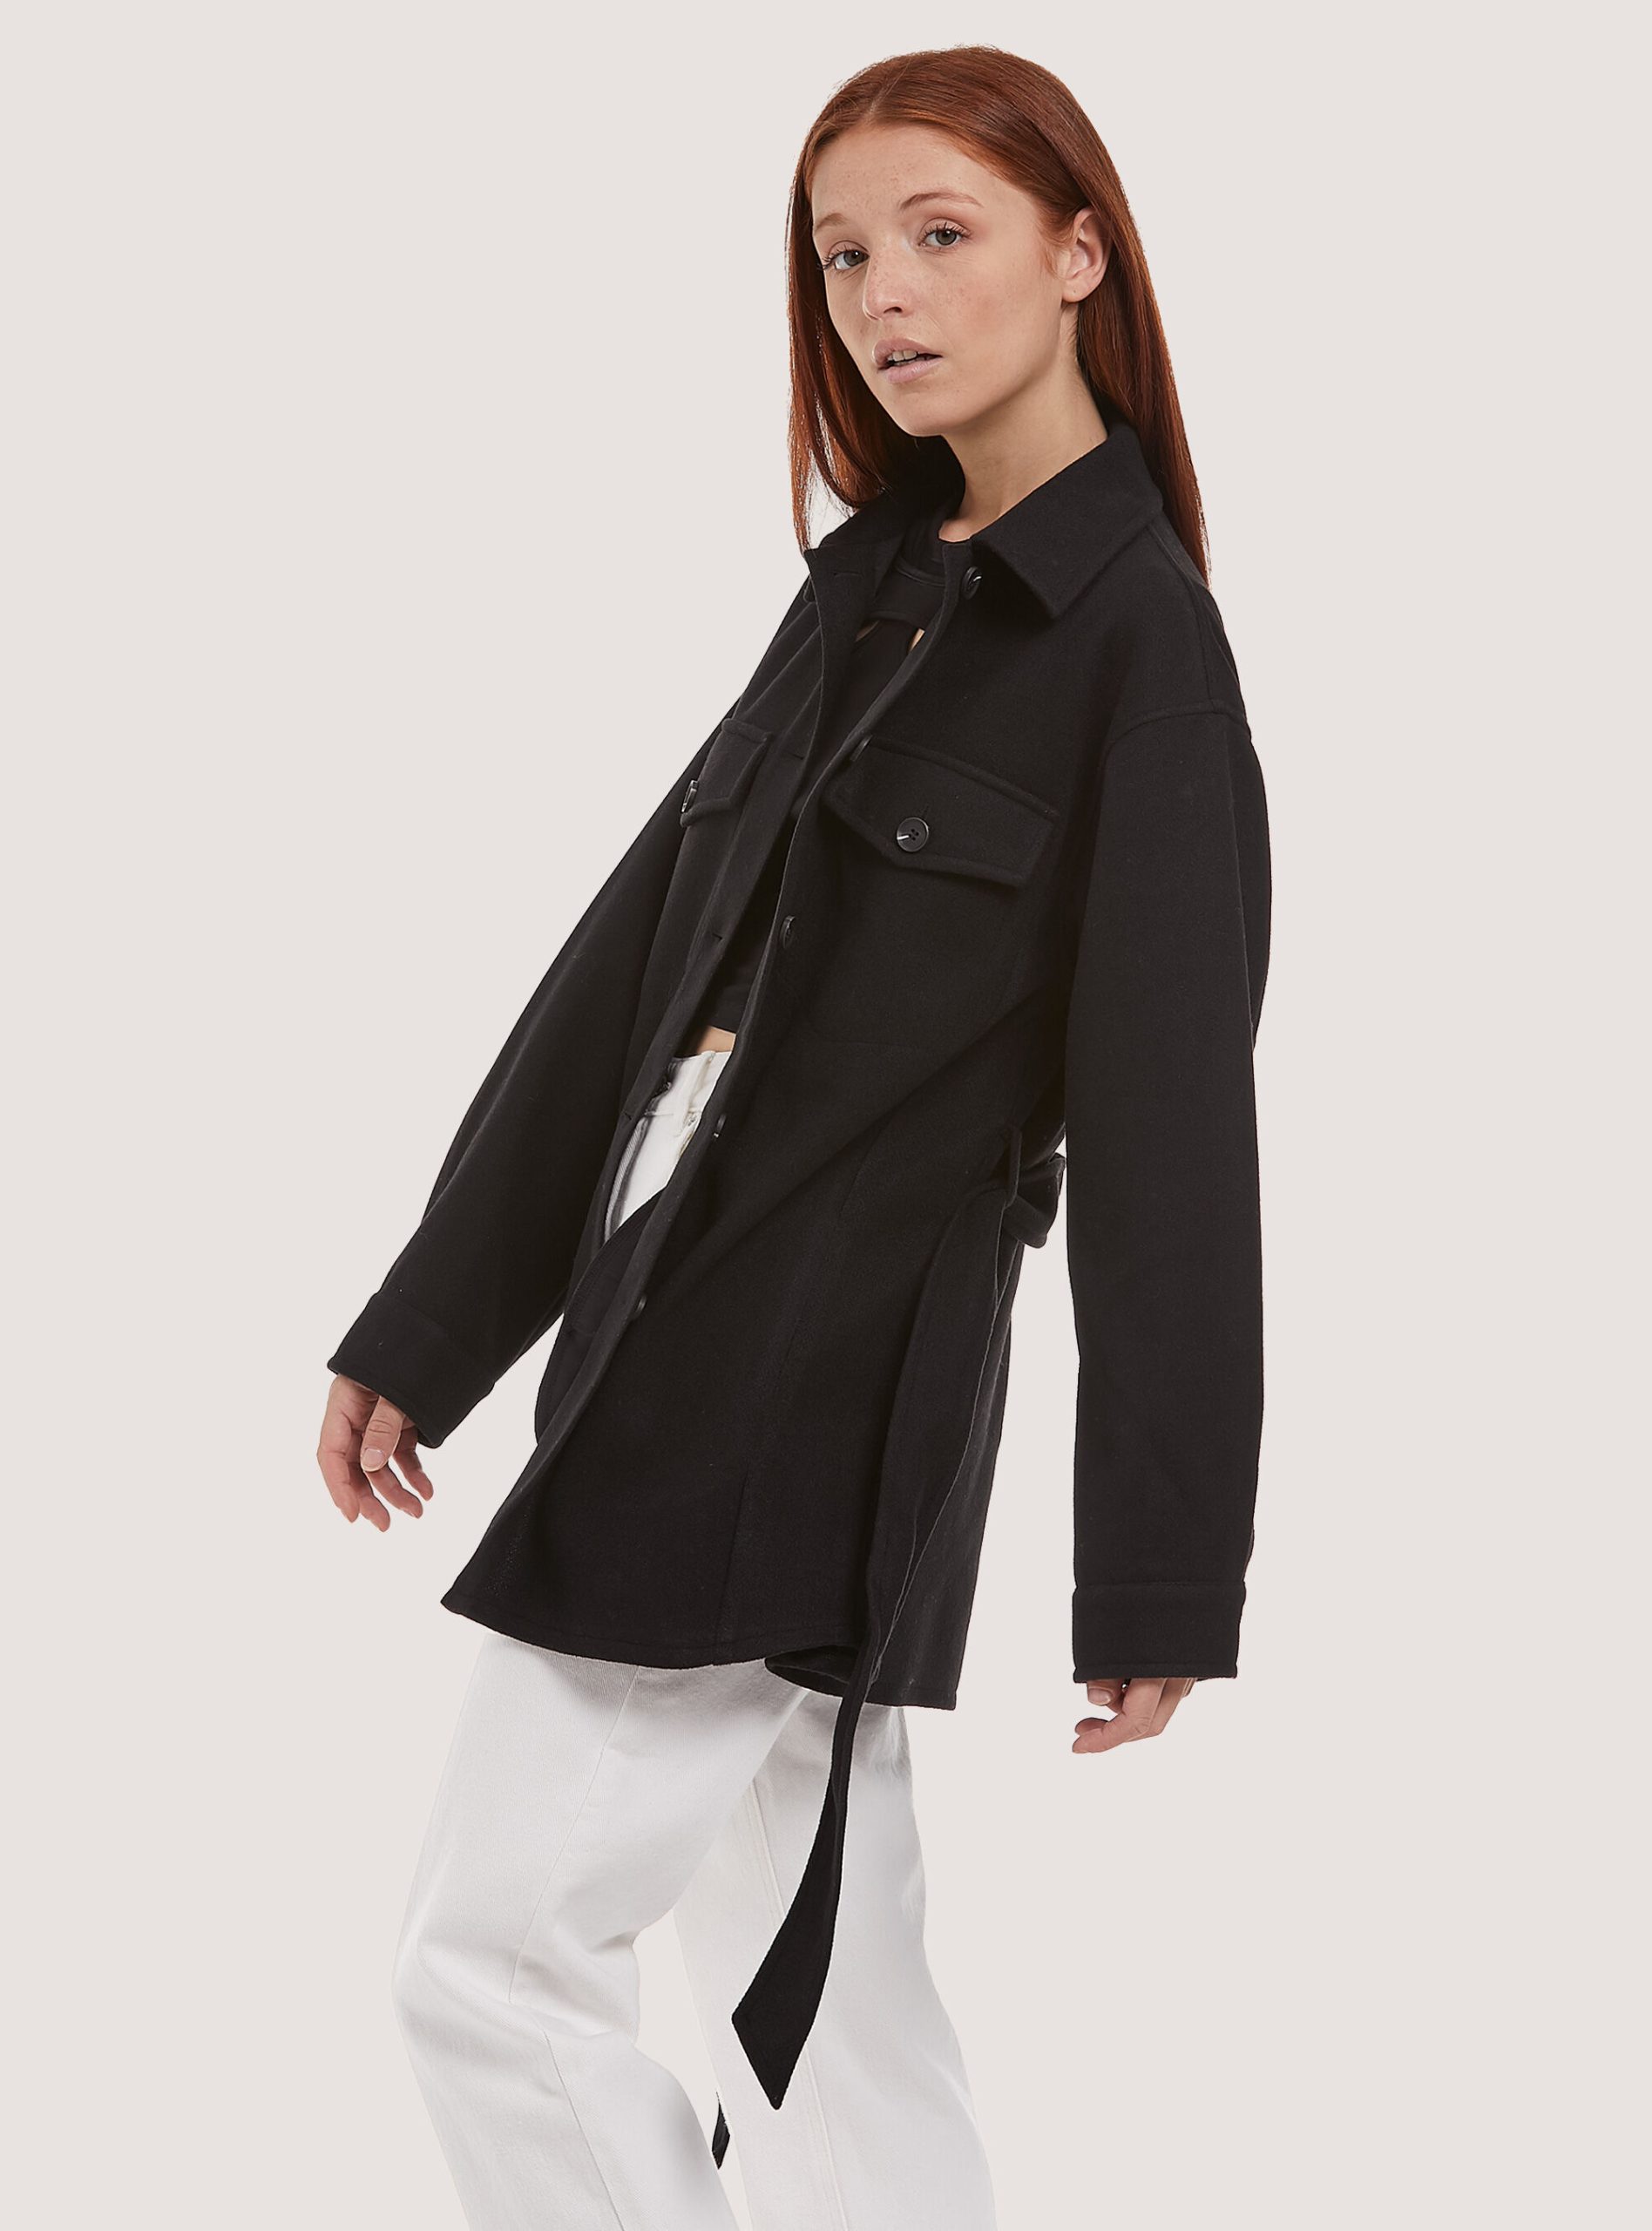 Oversize Soft Touch Shirt Jacket With Belt Empfehlen Frauen Hemden Alcott C101 Black – 1